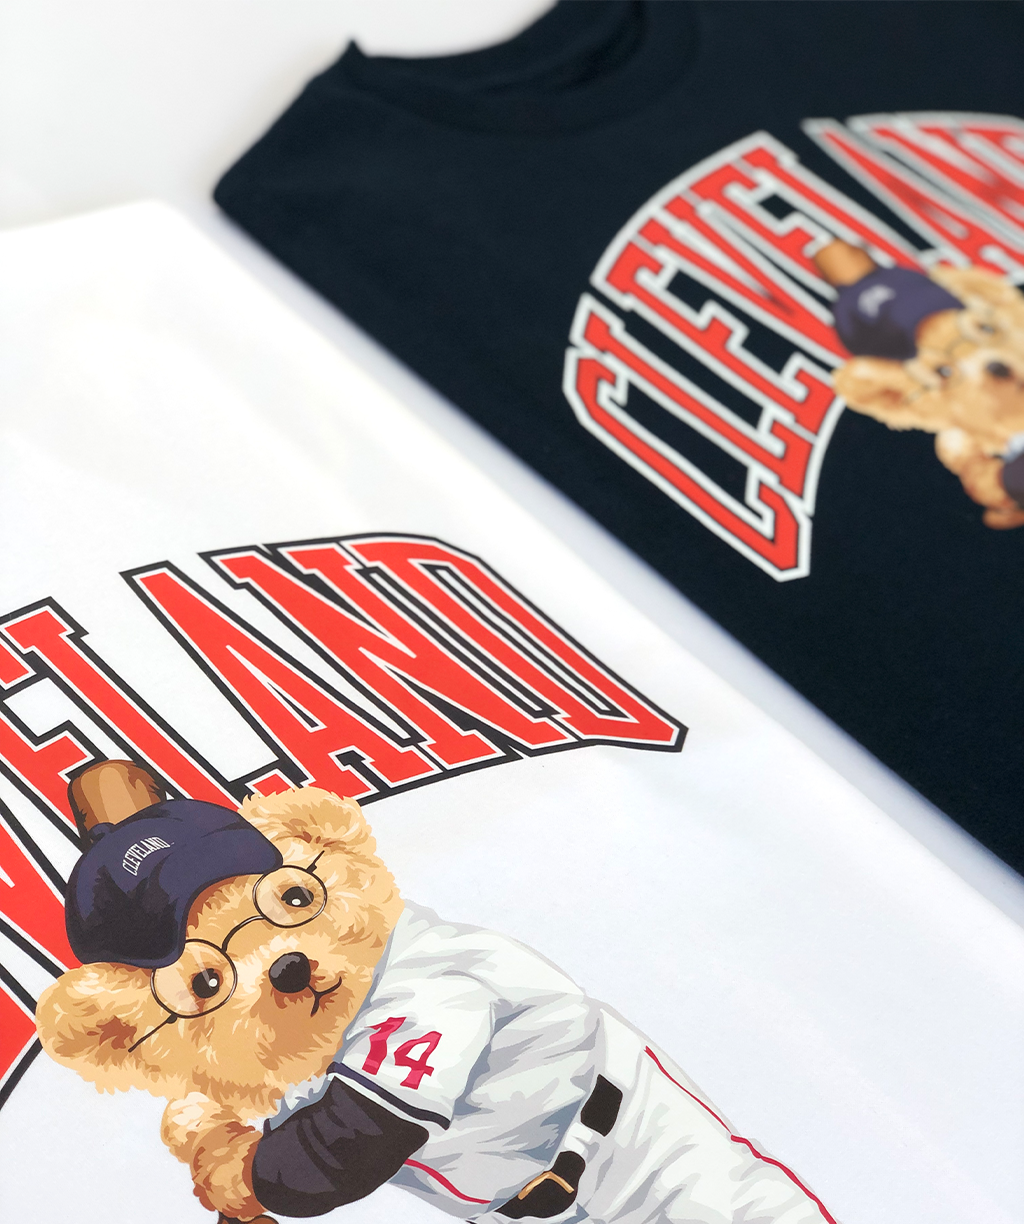 Cleveland Arc Baseball Bear T-shirt (Navy)